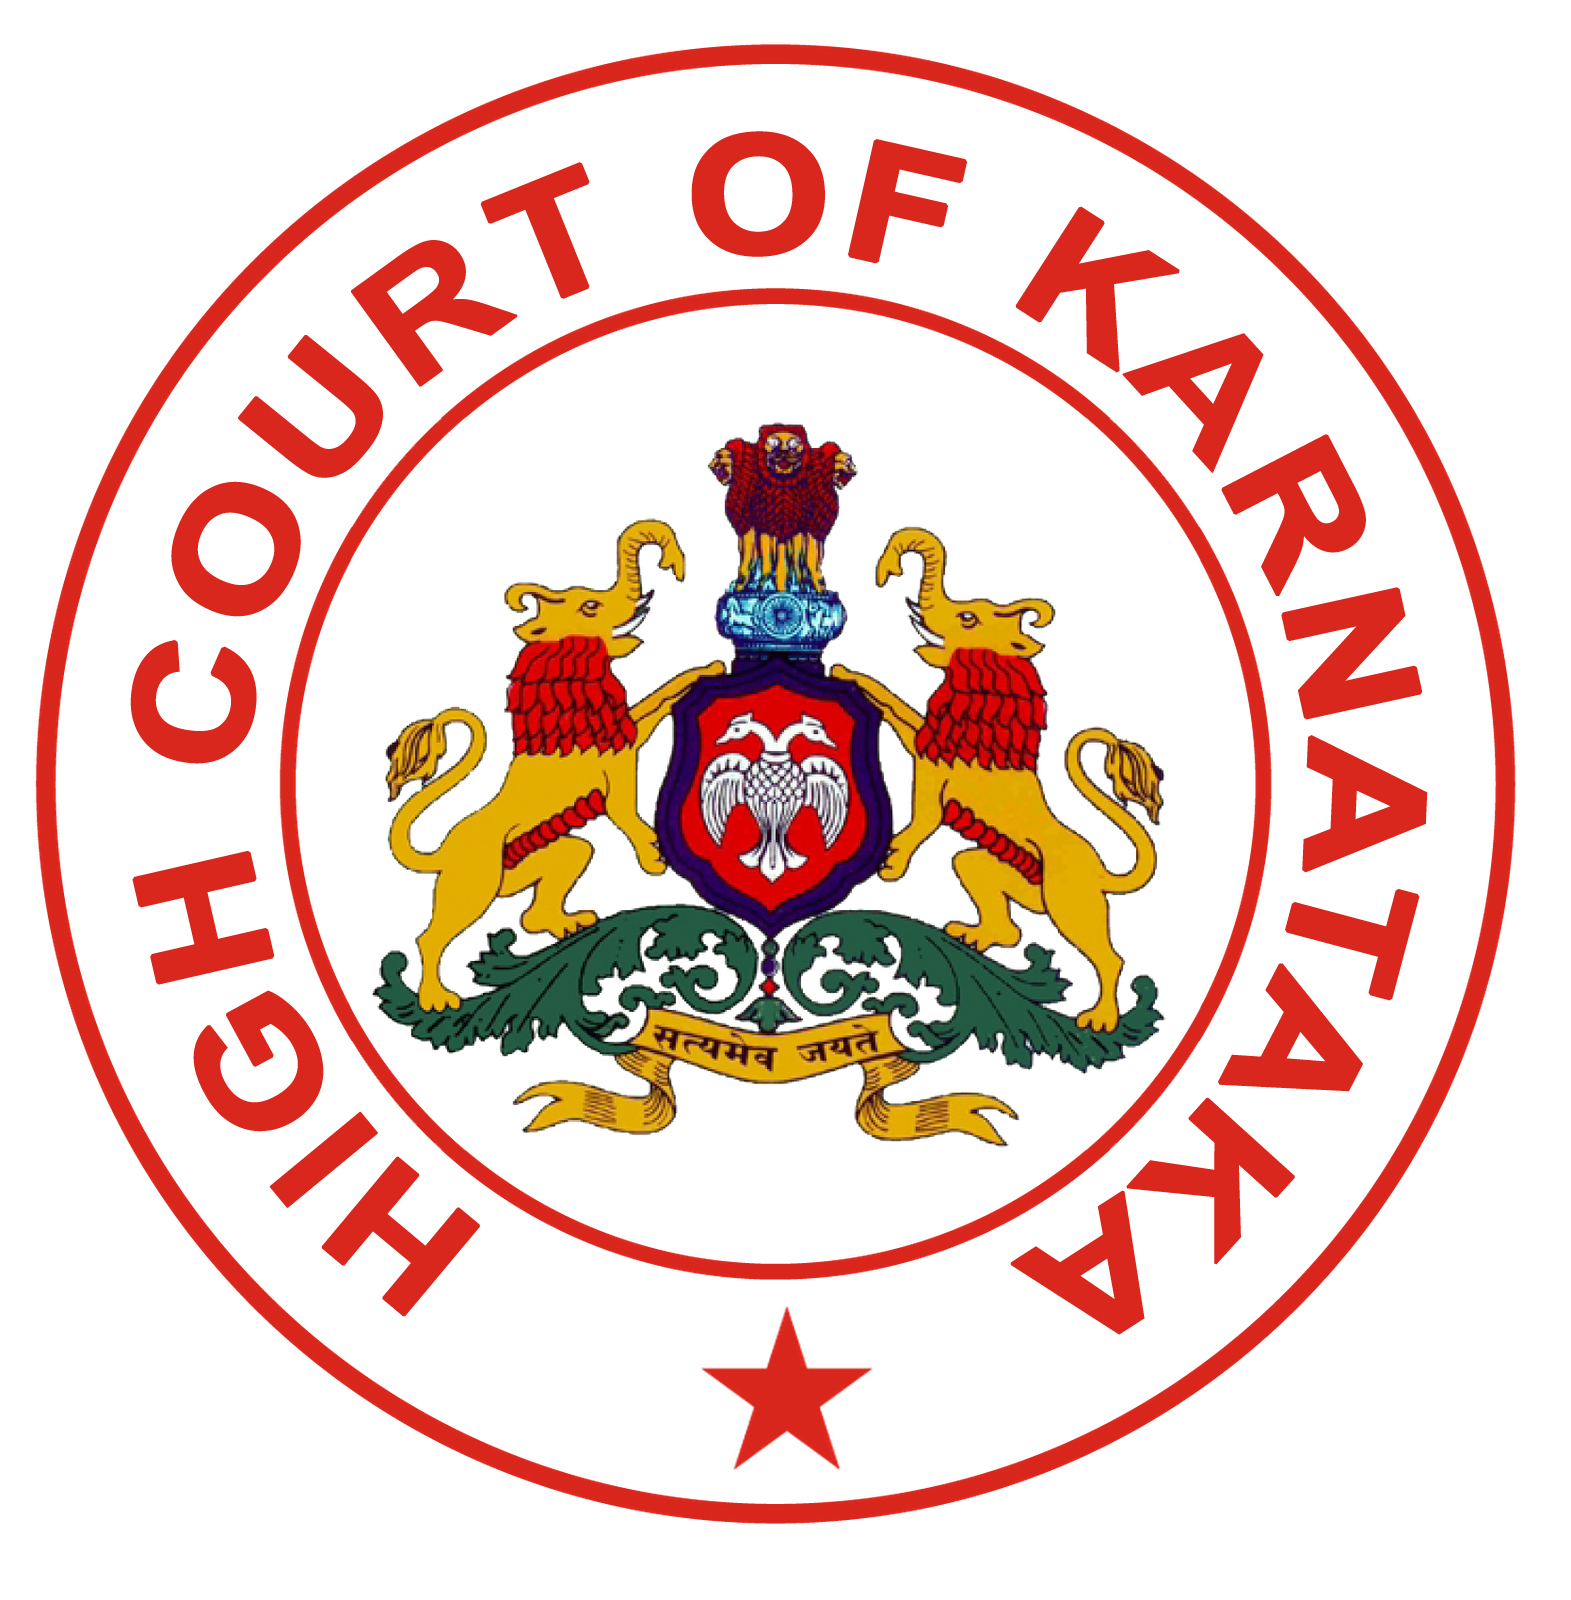 High Court of Karnataka